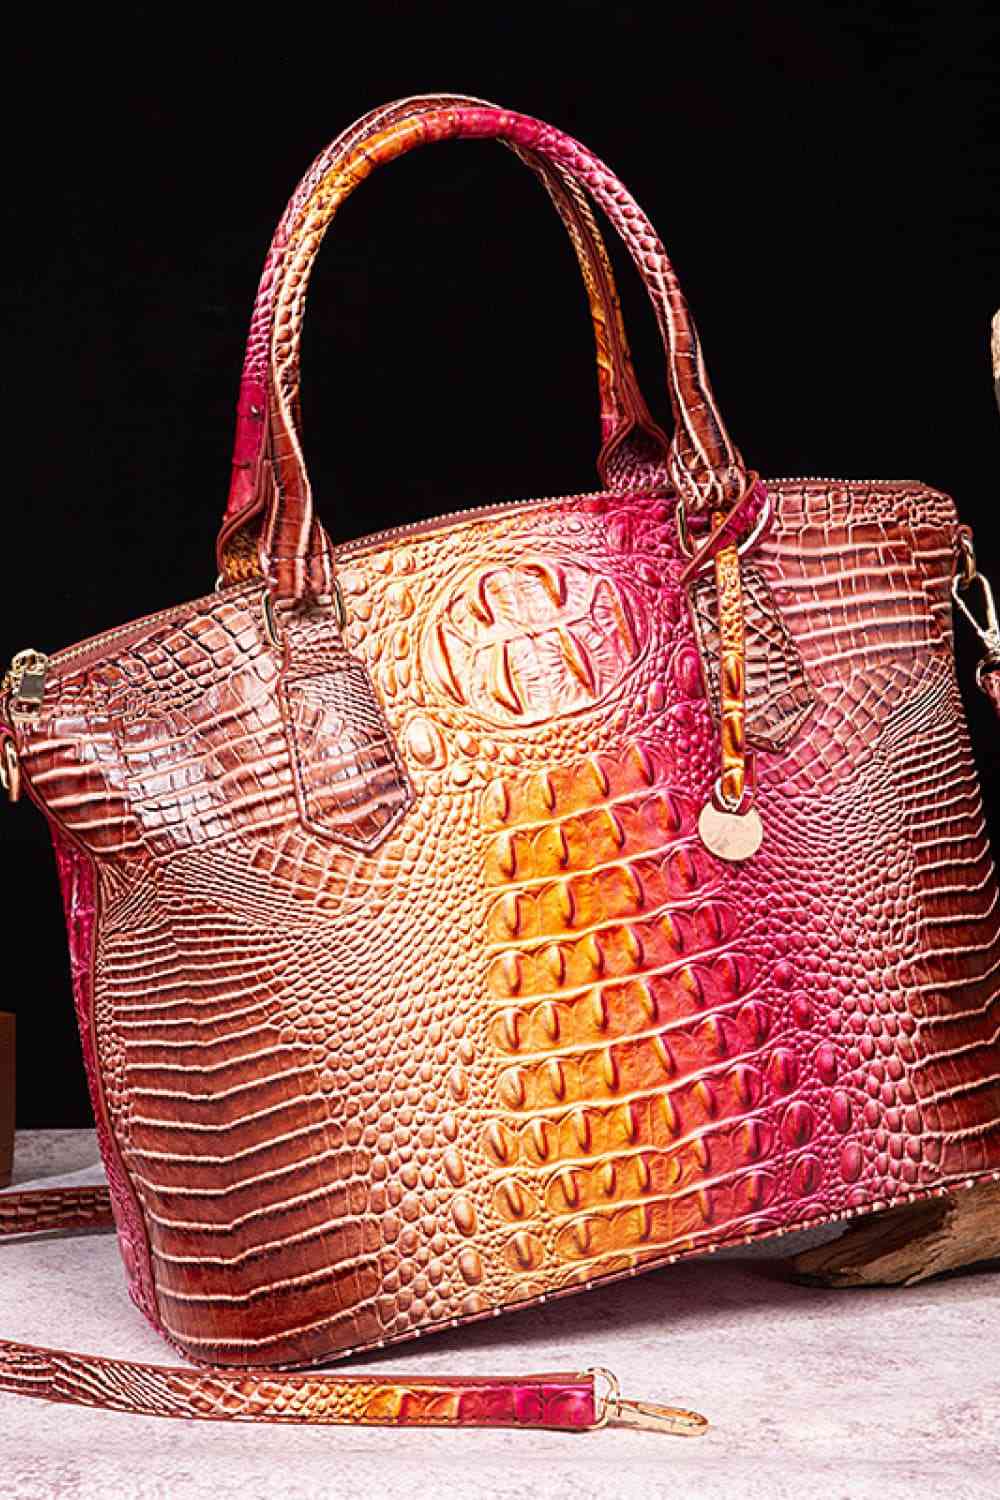 TEEK - Gradient Style Scheduler Handbag BAG TEEK Trend Brown/Pink  